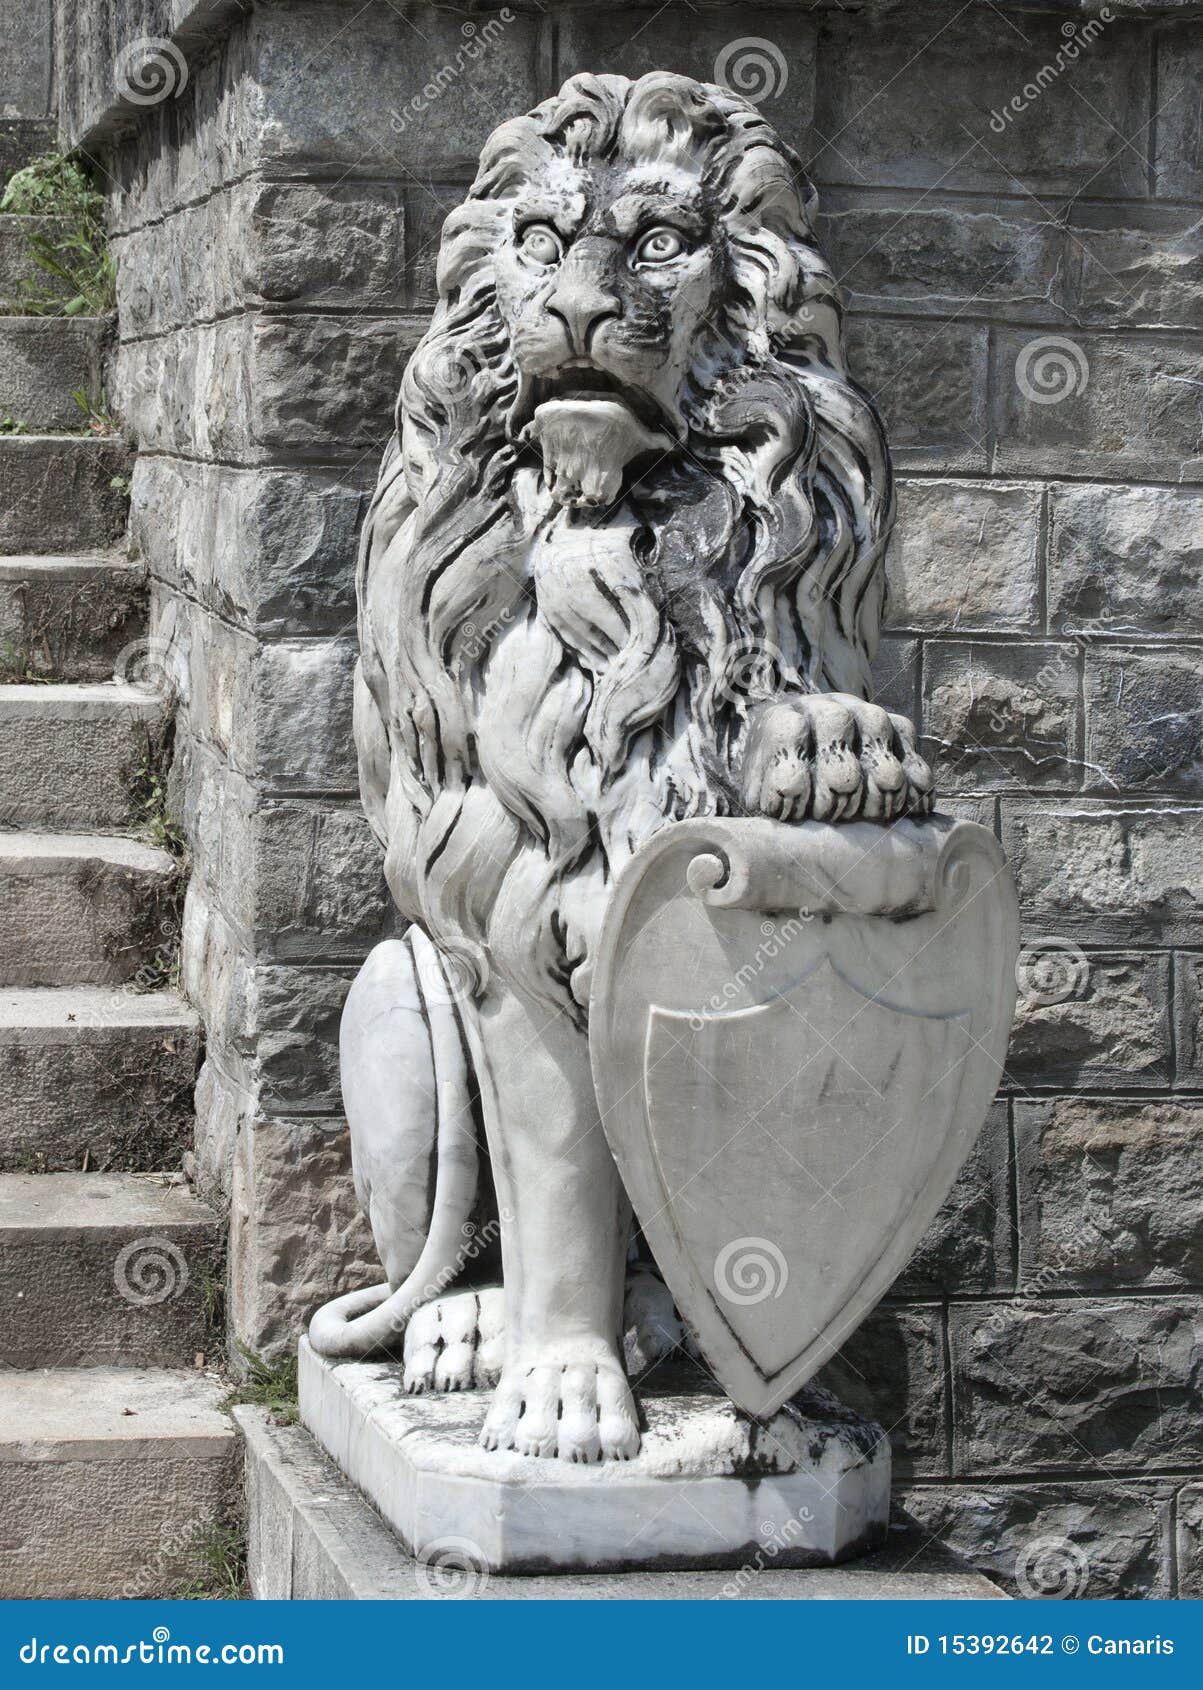 the guardian lion